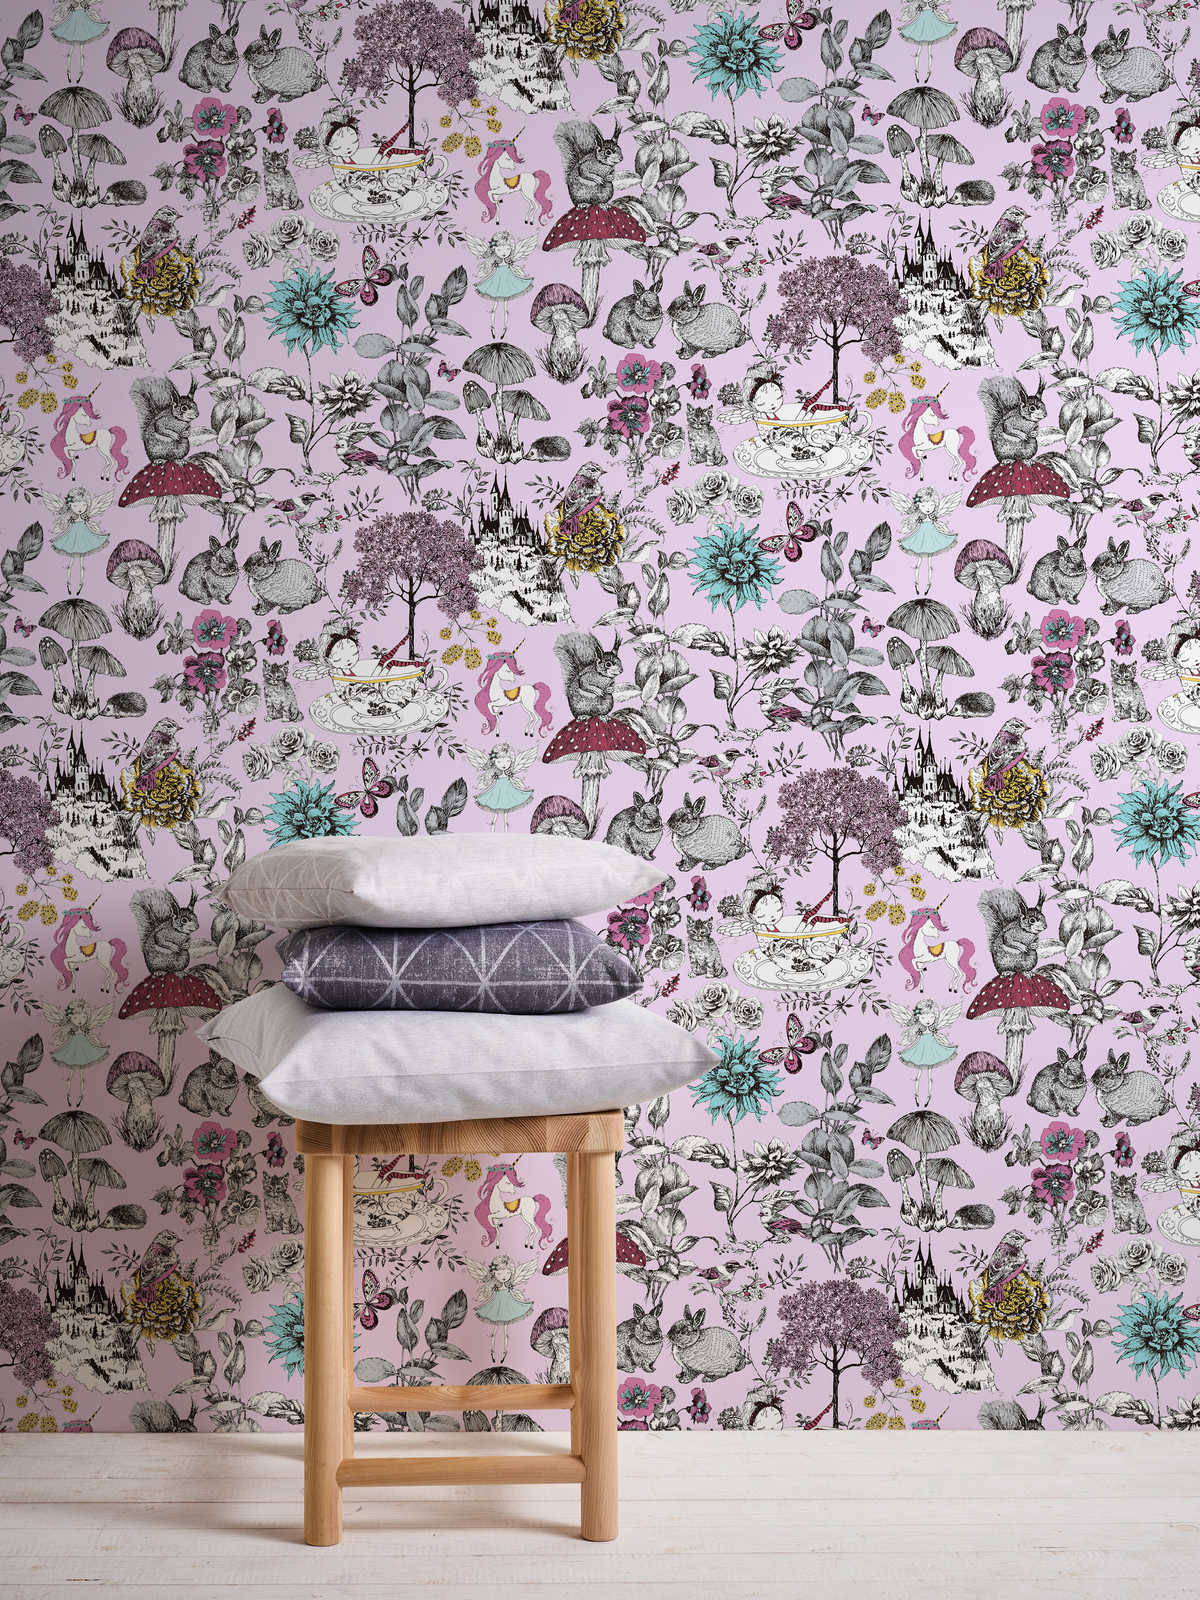             Forest wallpaper nursery fairies & animals - pink, black, white
        